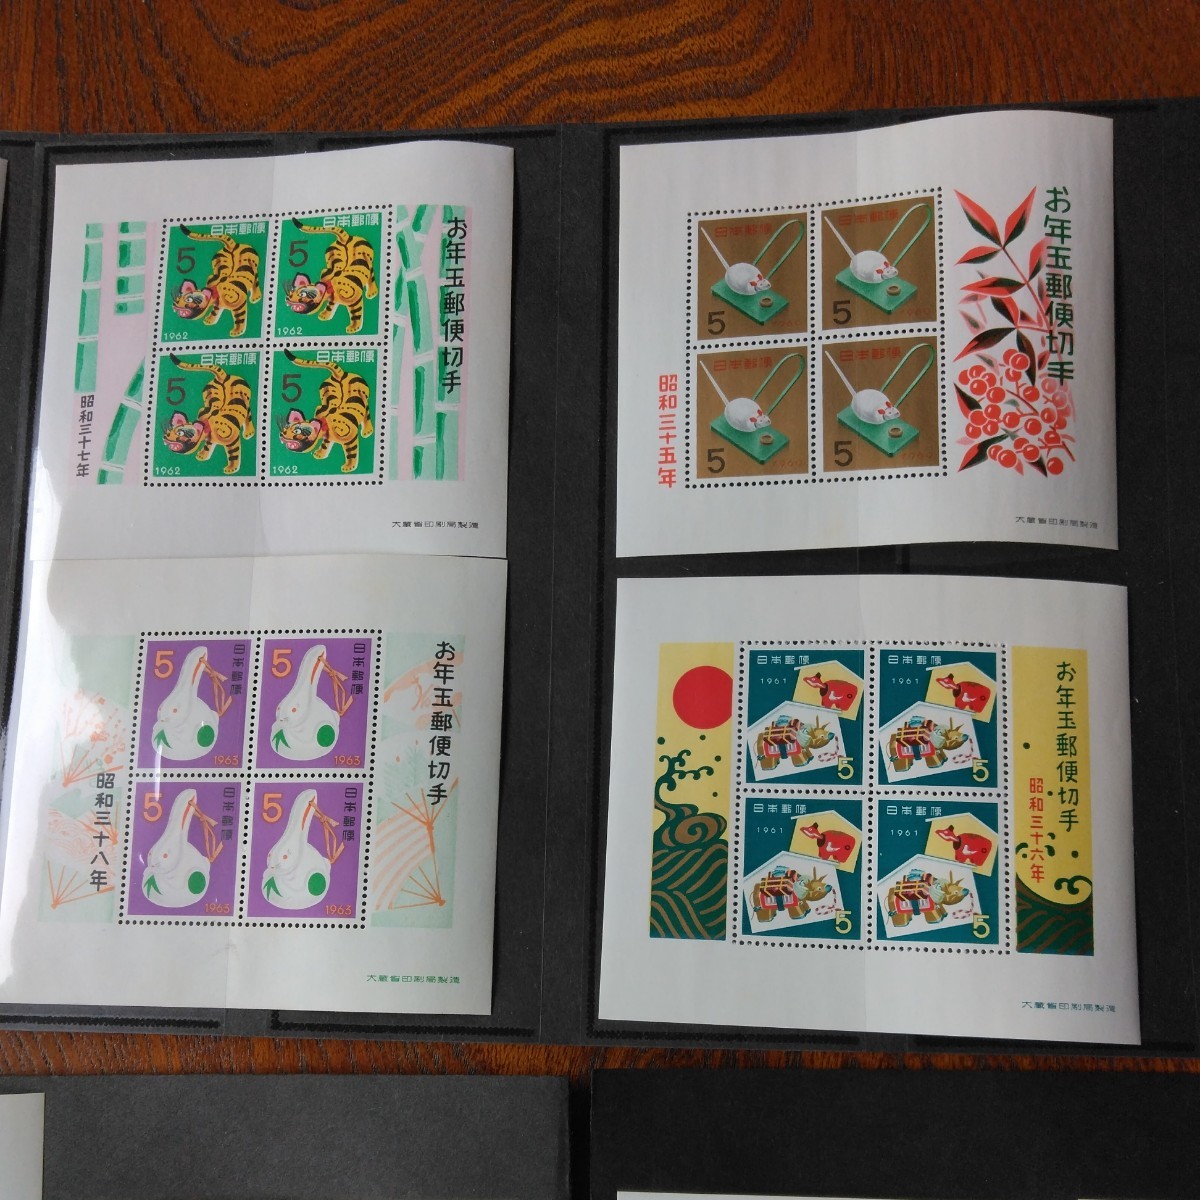 お年玉 年賀切手シートが30枚、30年分が有ります。どれも未使用切手シートで、綺麗ですが長年しまって置いた切手シートの為、やけやしみが_画像2